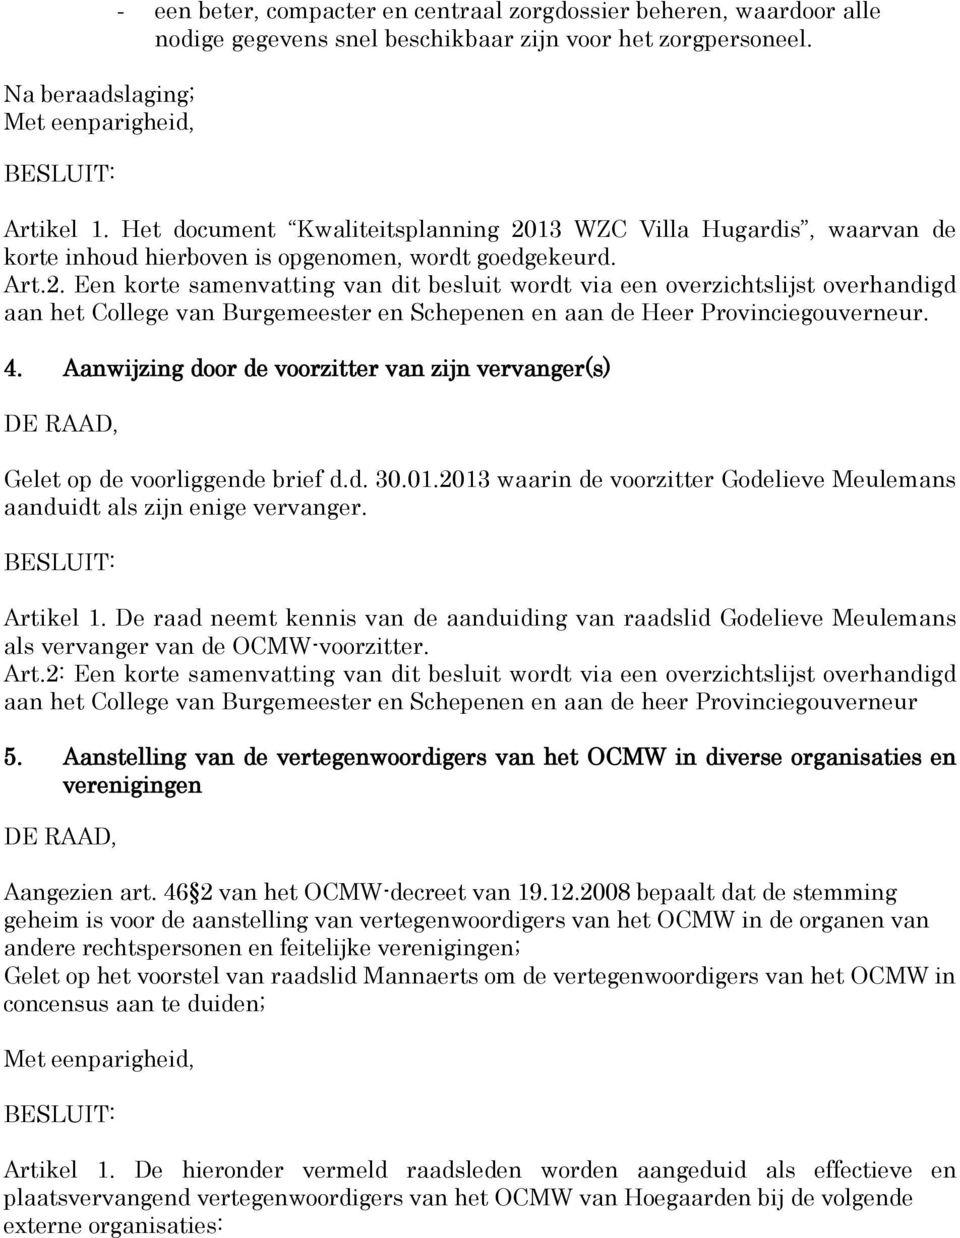 4. Aanwijzing door de voorzitter van zijn vervanger(s) Gelet op de voorliggende brief d.d. 30.01.2013 waarin de voorzitter Godelieve Meulemans aanduidt als zijn enige vervanger. Artikel 1.